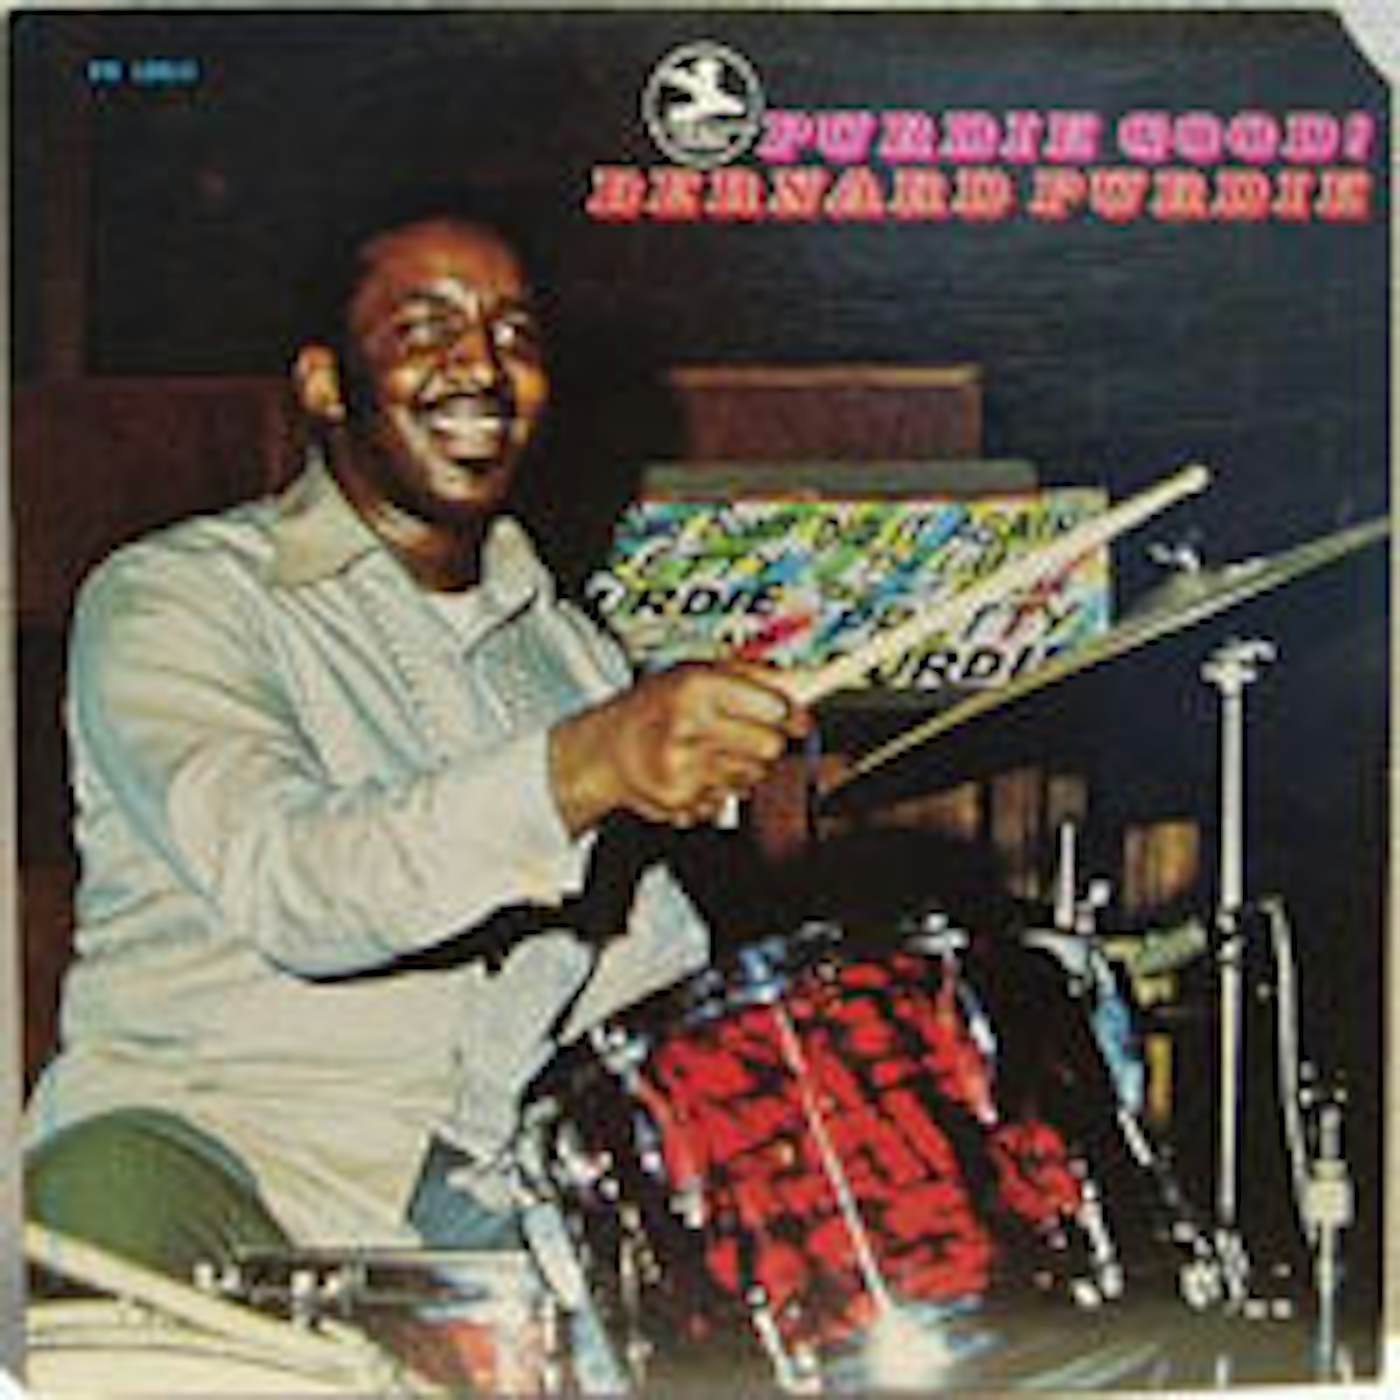 Bernard Purdie LP - Purdie Good (Vinyl)